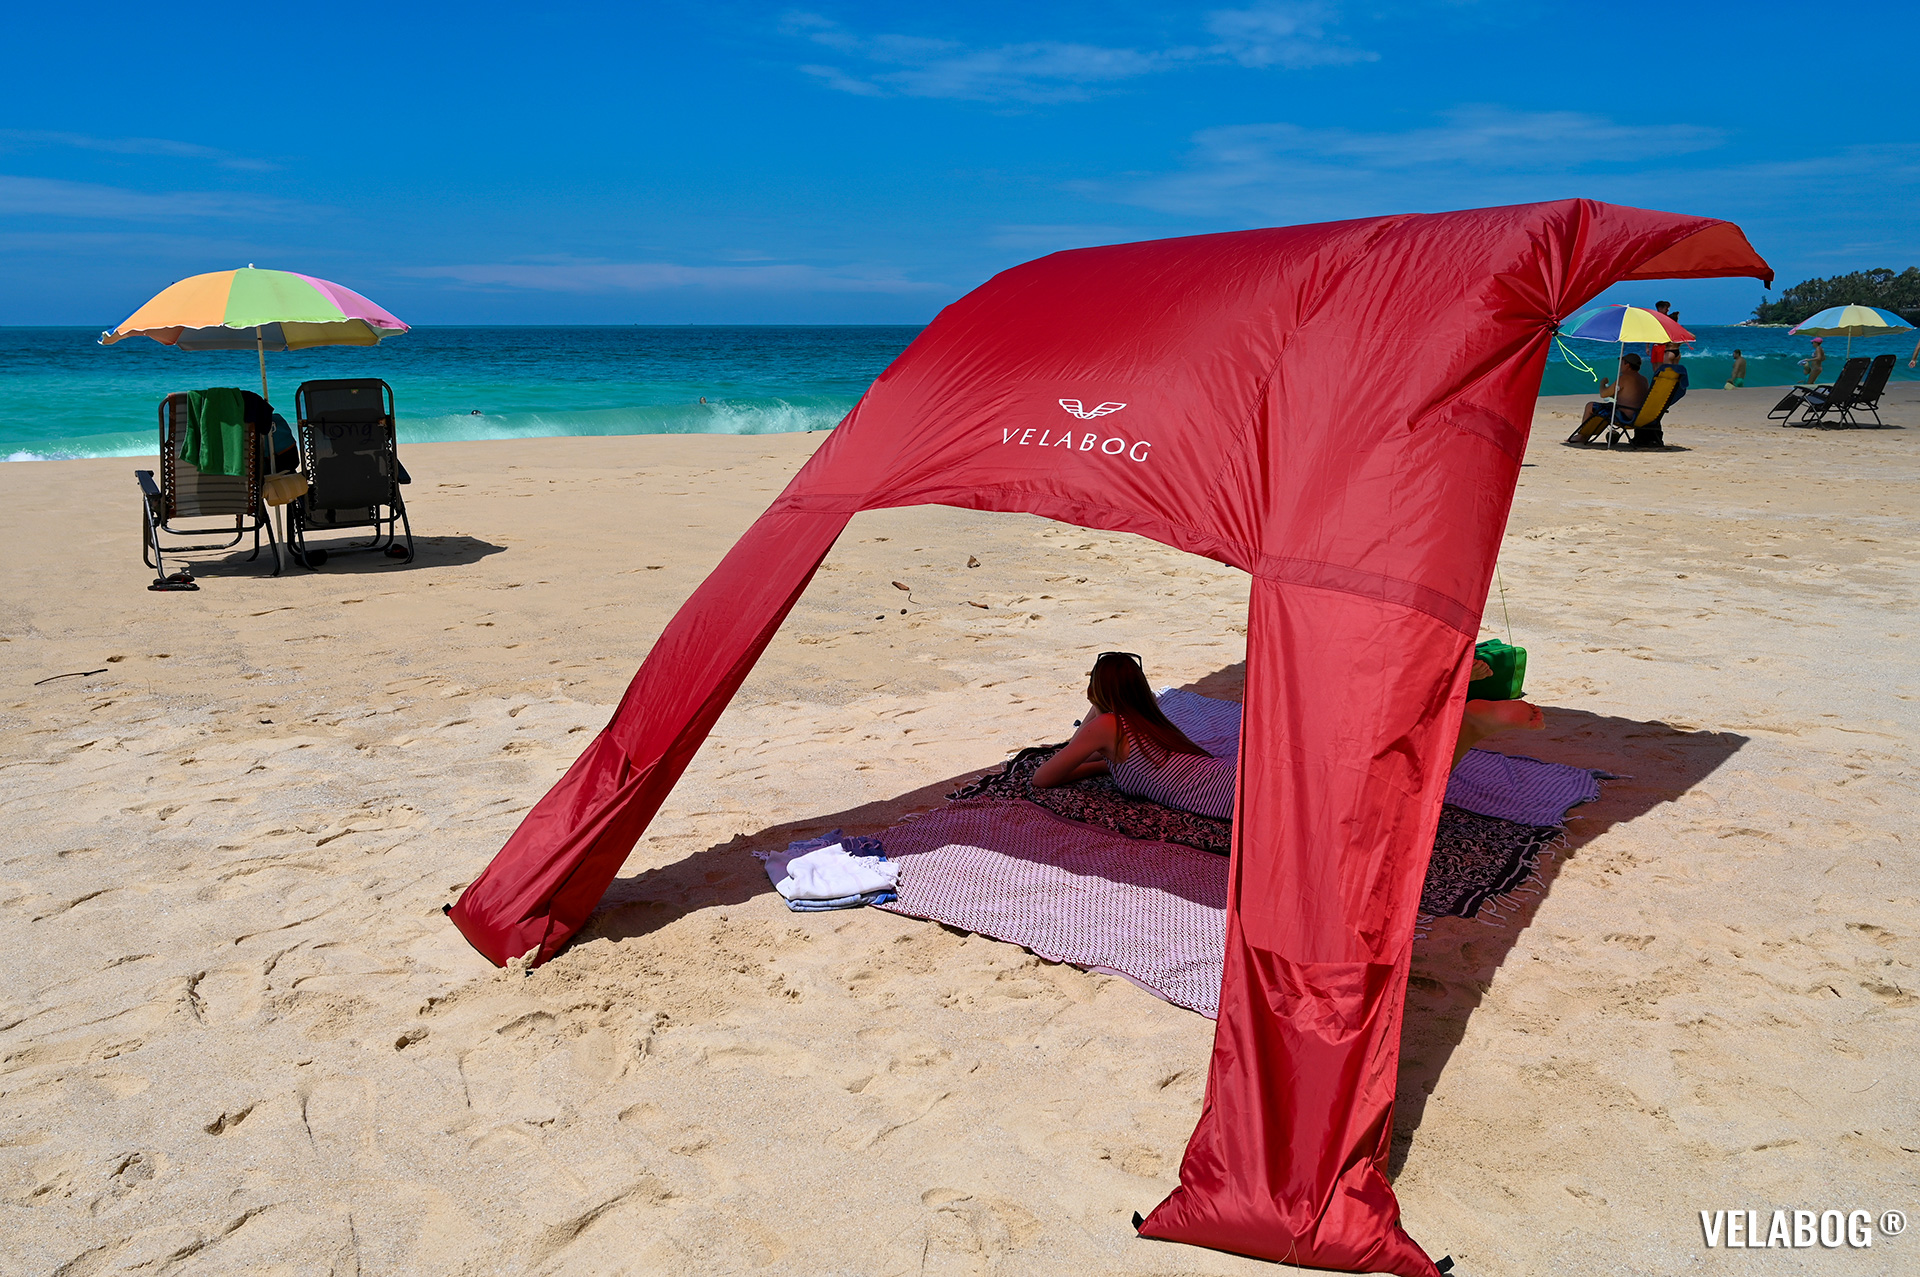 Солнечный парус Velabog «Breeze» красный. Намного больше тени по сравнению с пляжными зонтиками. Вариант установки при слабом или сильном ветре. Щедрая тень.